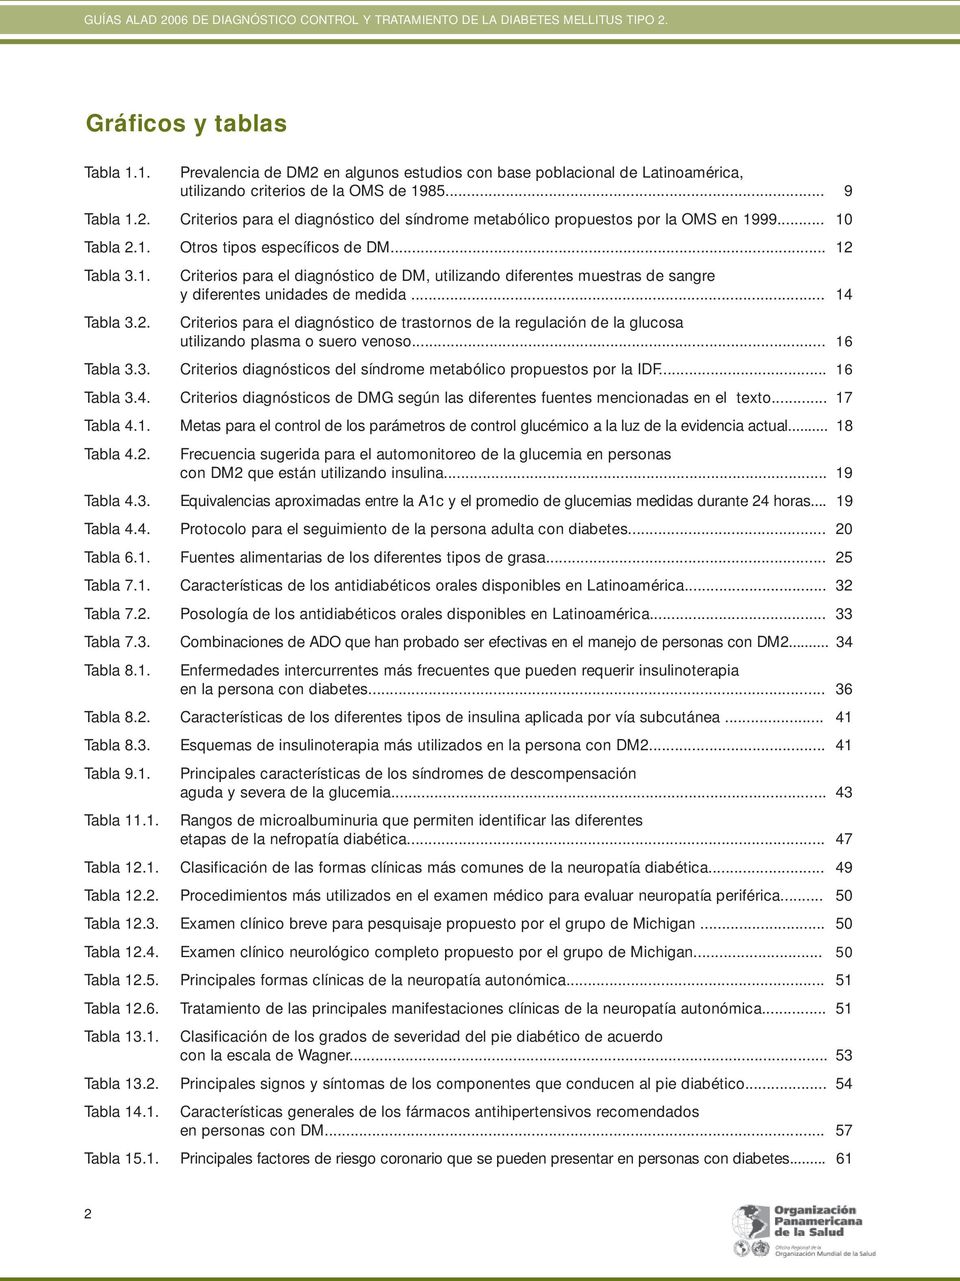 .. 16 Tabla 3.3. Criterios diagnósticos del síndrome metabólico propuestos por la IDF... 16 Tabla 3.4. Criterios diagnósticos de DMG según las diferentes fuentes mencionadas en el texto... 17 Tabla 4.